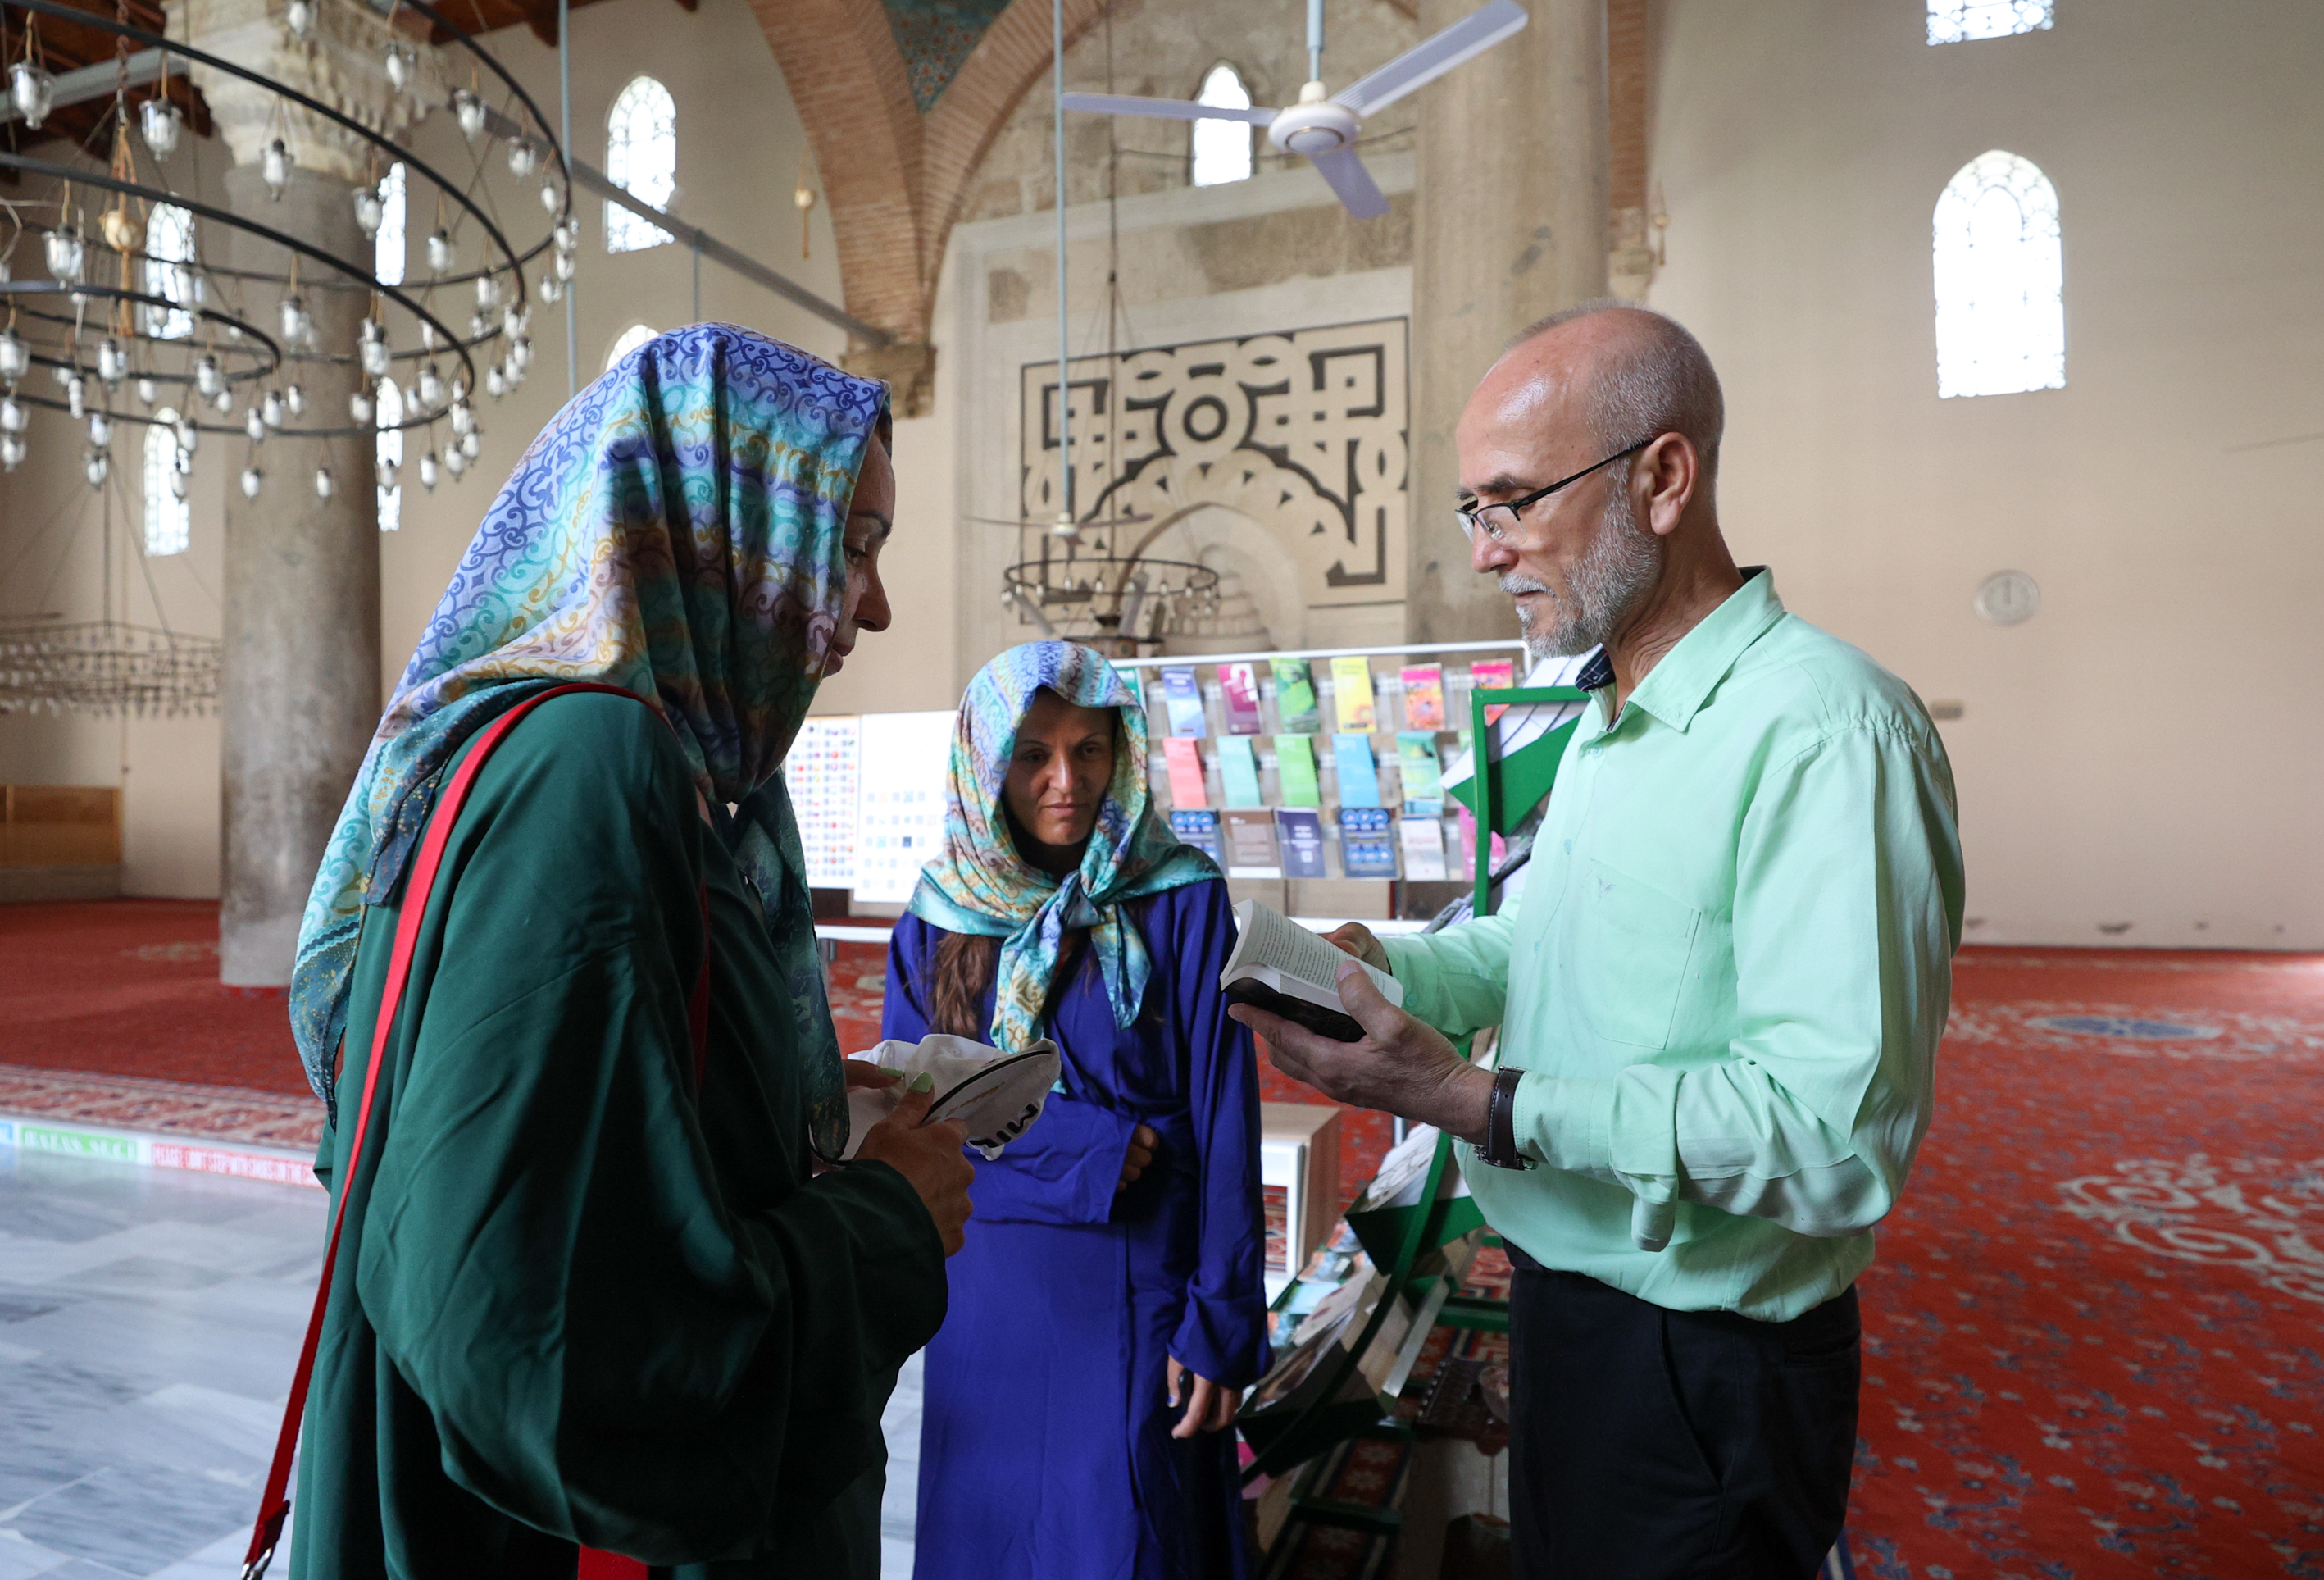 Şehit babası imam İbrahim Taşdemir camiye gelen turistlere 25 dilde hitap edip abdest almayı öğretiyor